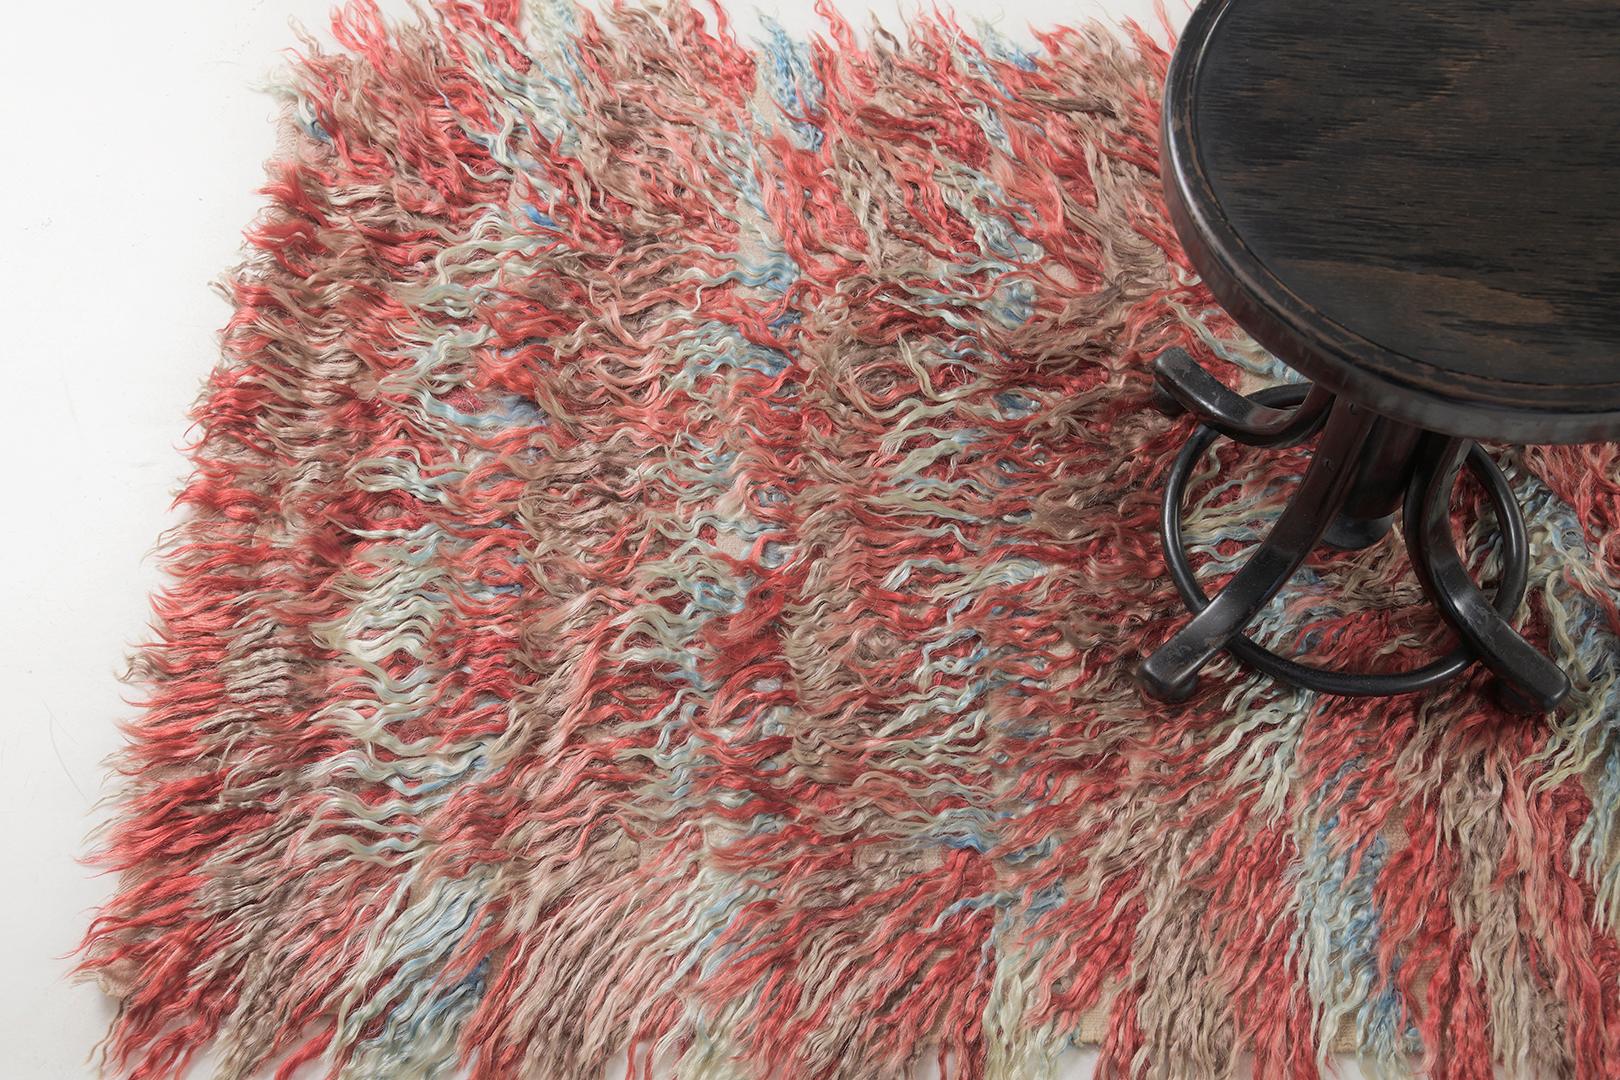 Tulu ist ein wunderschöner Wollschurwollstoff mit erstaunlichen Lagen aus verschiedenen Blau- und Rottönen. Sie bereichern die atemberaubende Landschaft und werden von der nächsten Generation geliebt werden. Türkisch-anatolische Teppiche verweben